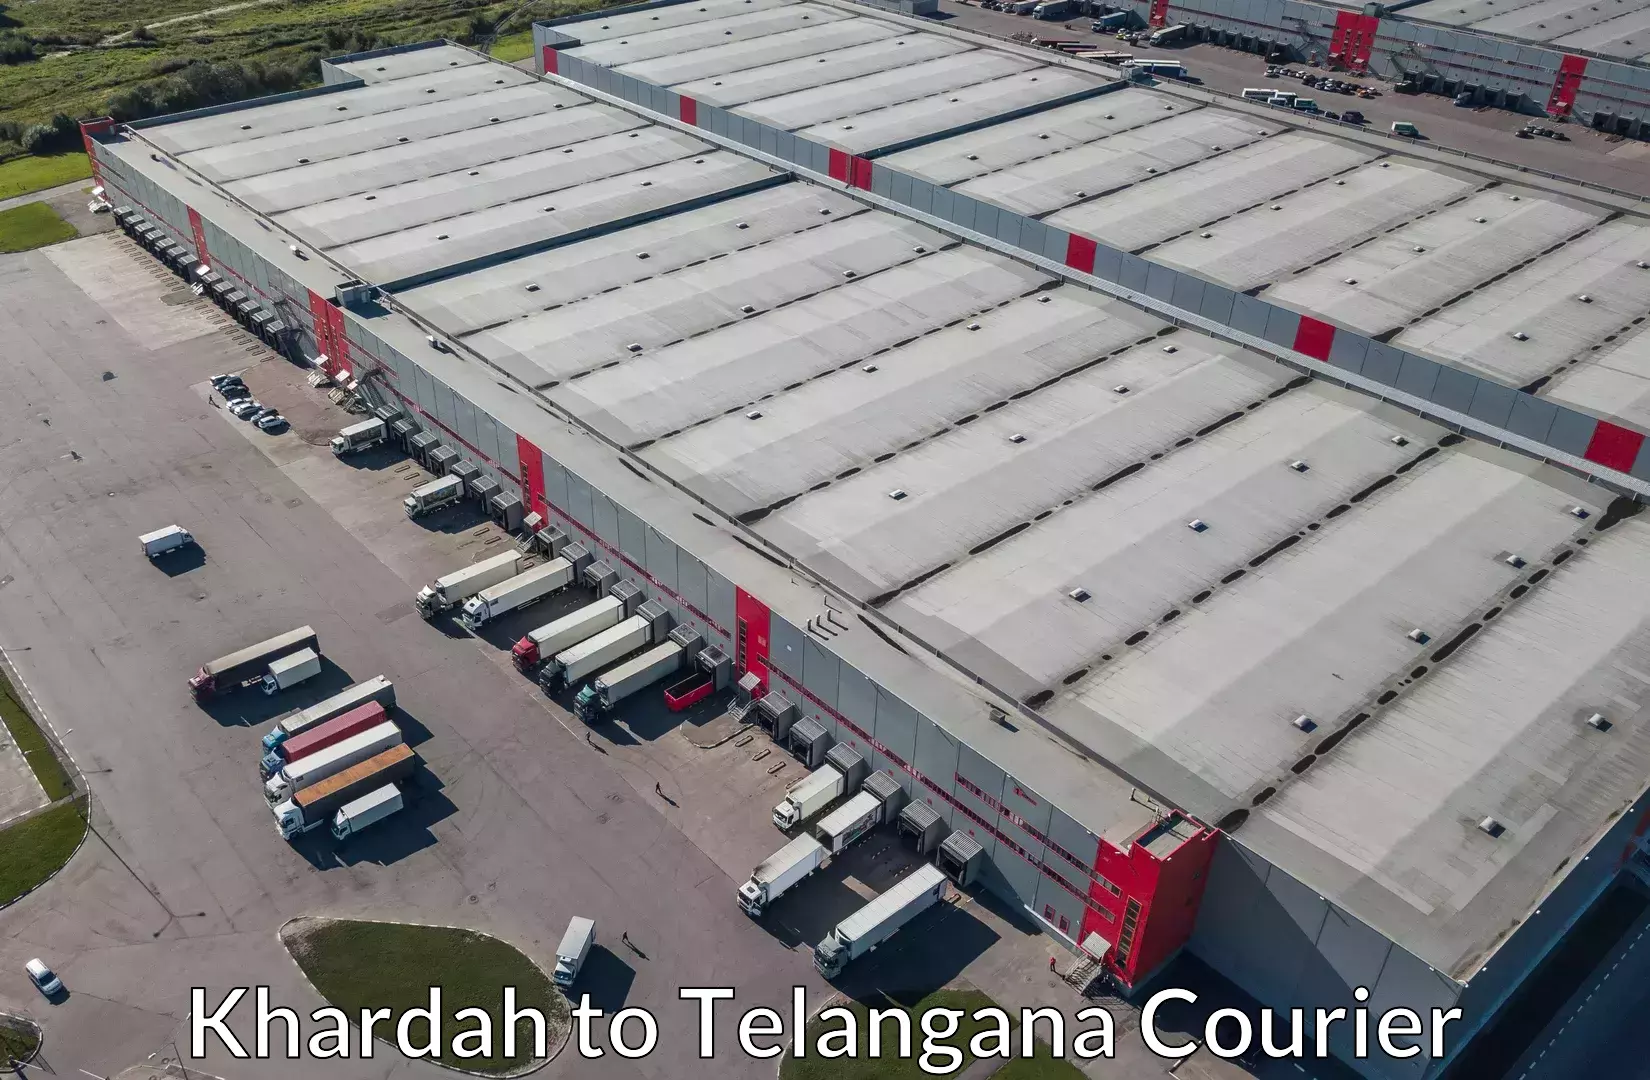 Luggage delivery optimization in Khardah to Telangana